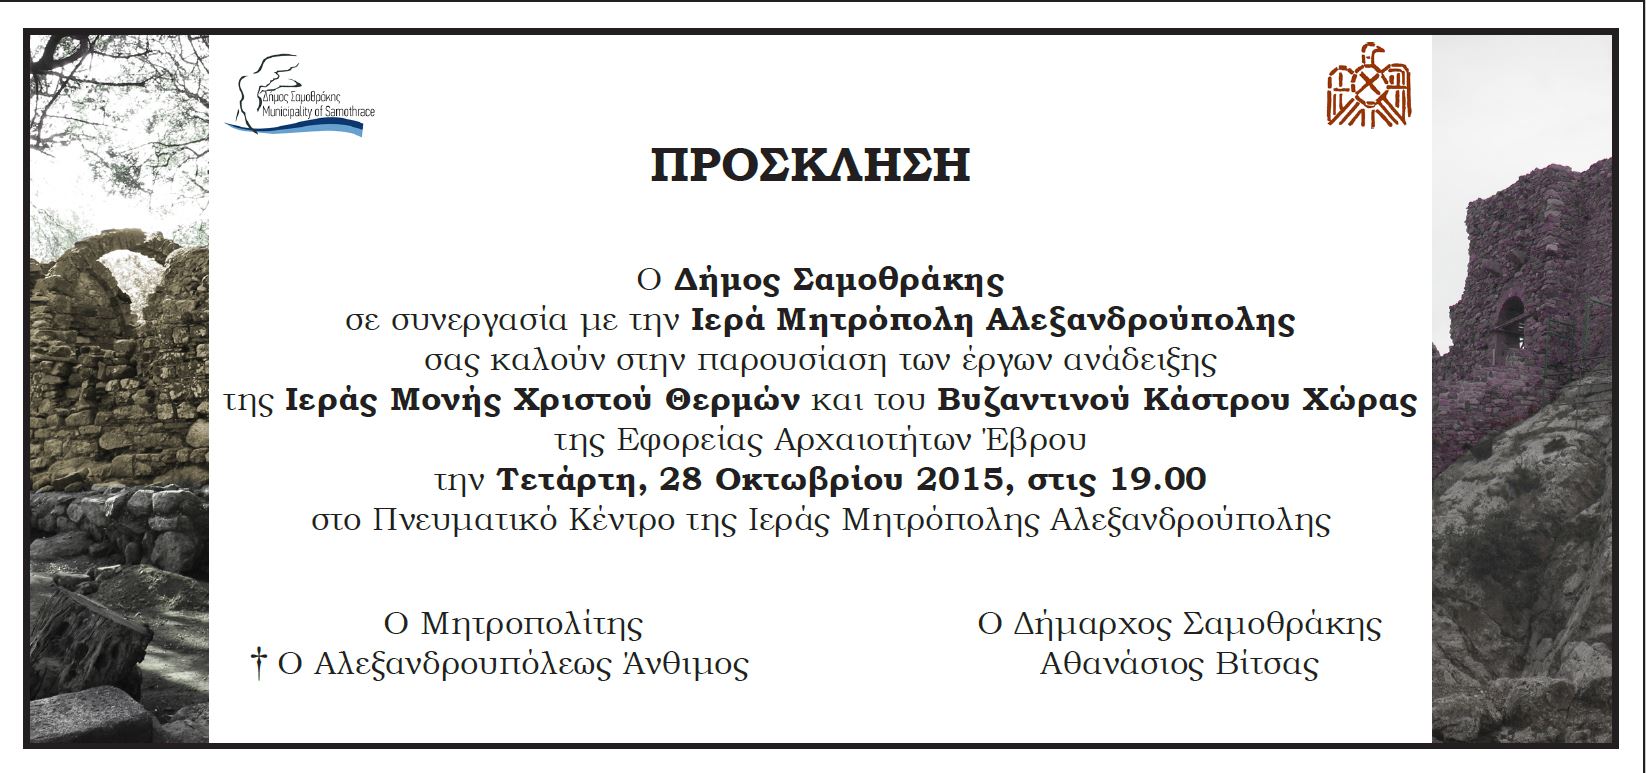 ΔΗΜΟΣ ΣΑΜΟΘΡΑΚΗΣ | Εκδήλωση Δήμου Σαμοθράκης στην Αλεξανδρούπολη